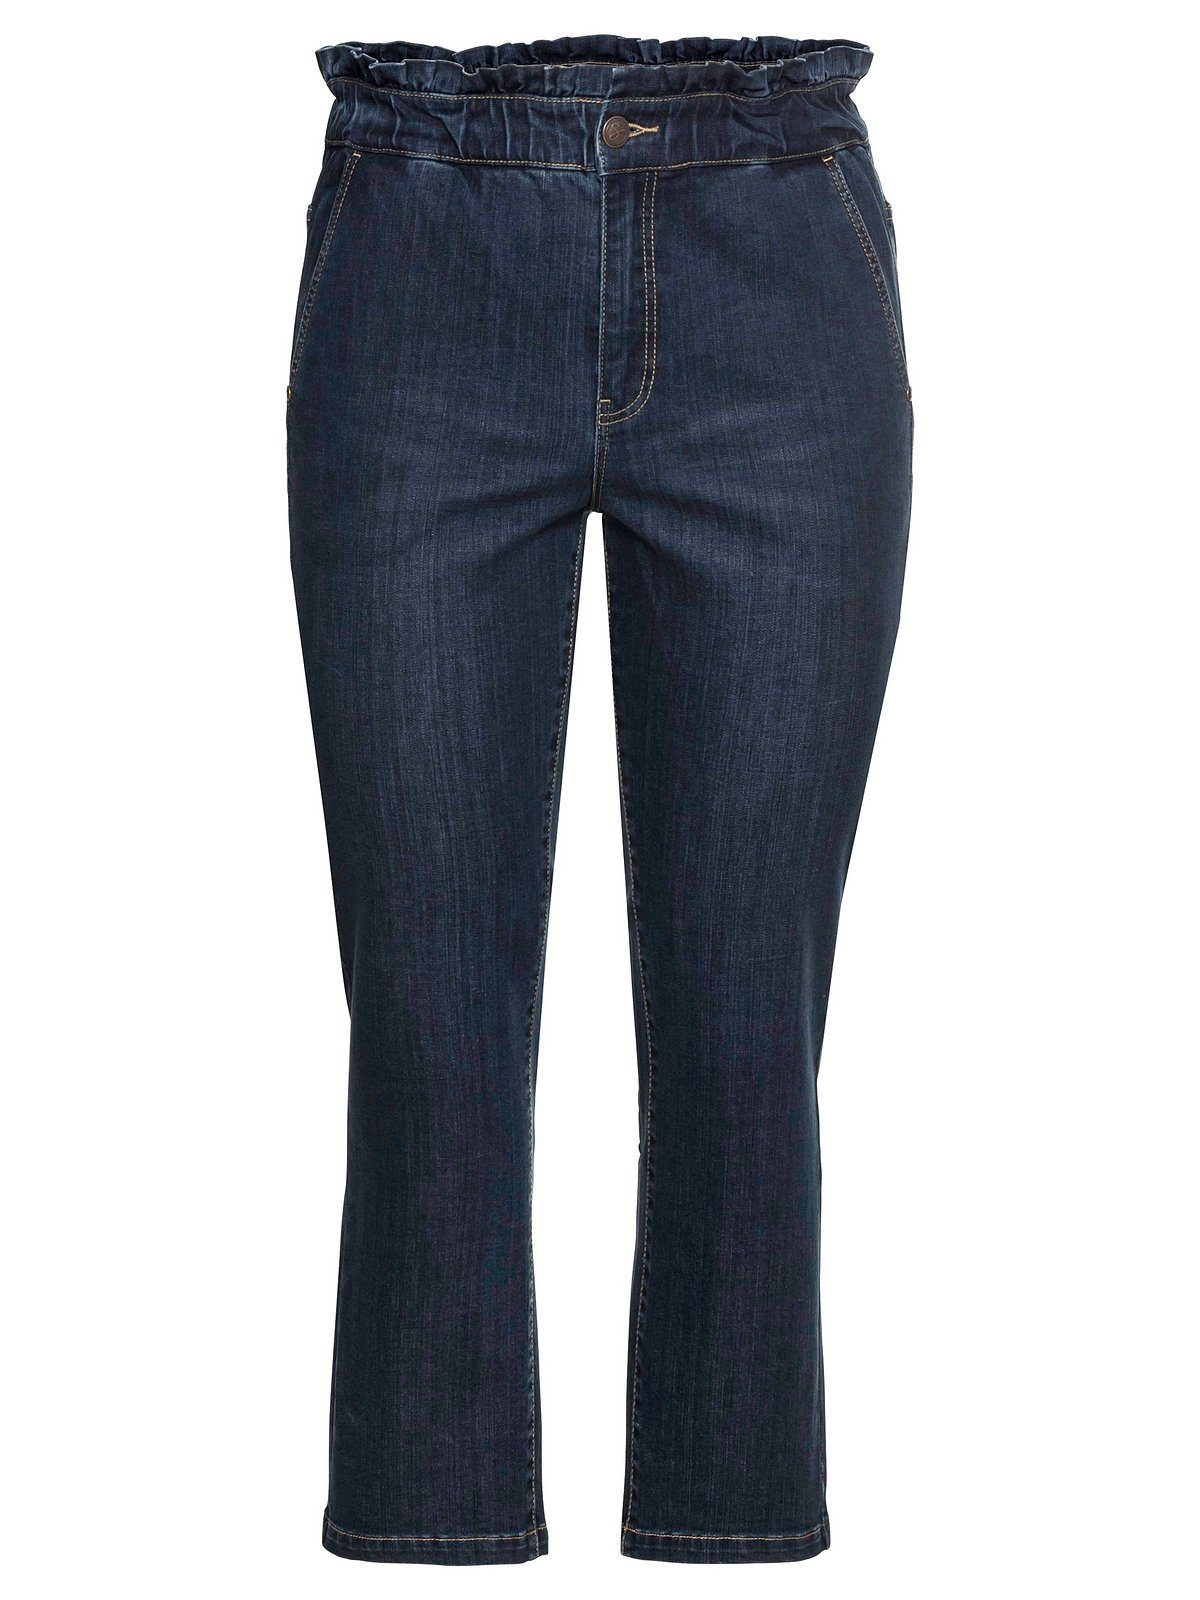 Damen Jeans Sheego Stretch-Jeans sheego Jeans in gerader Form mit gerafftem High-Waist-Bund